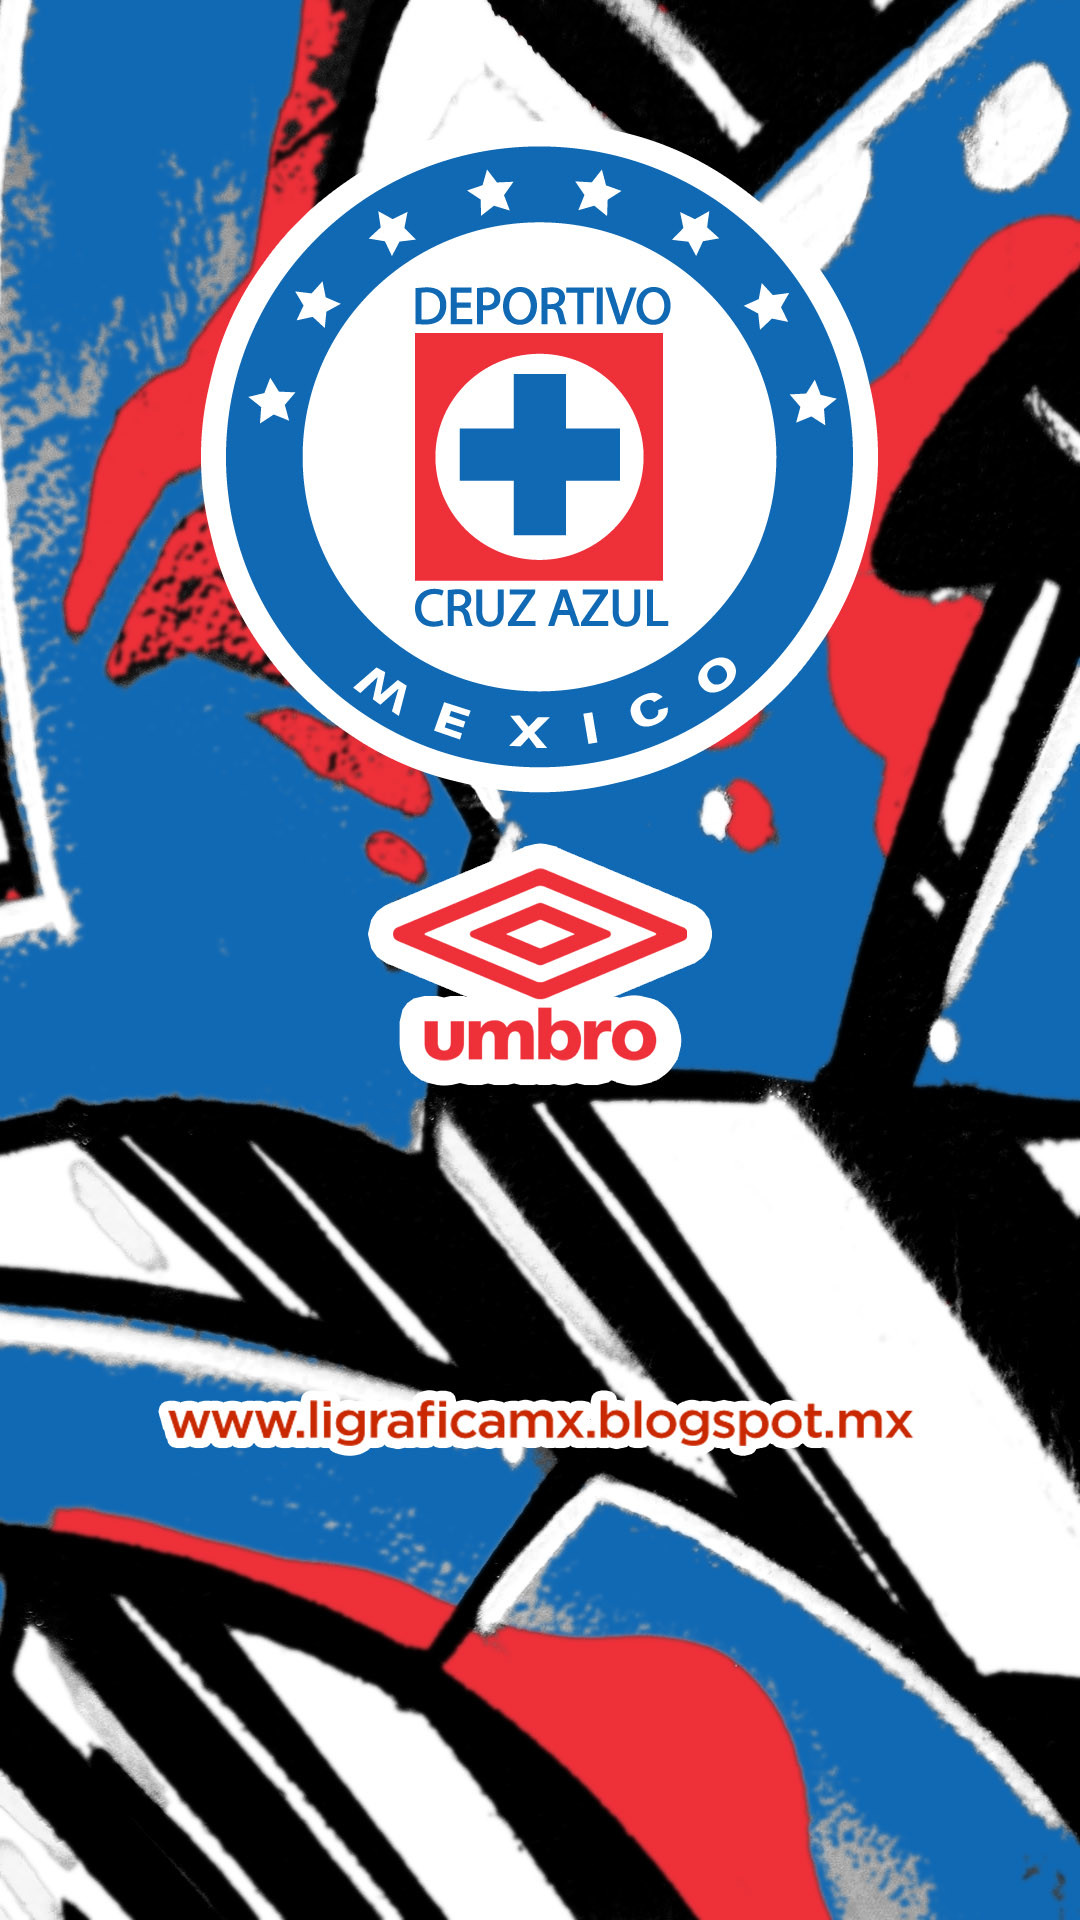 1080x1920 Cruz Azul • Umbro LigraficaMX - 020414CTG